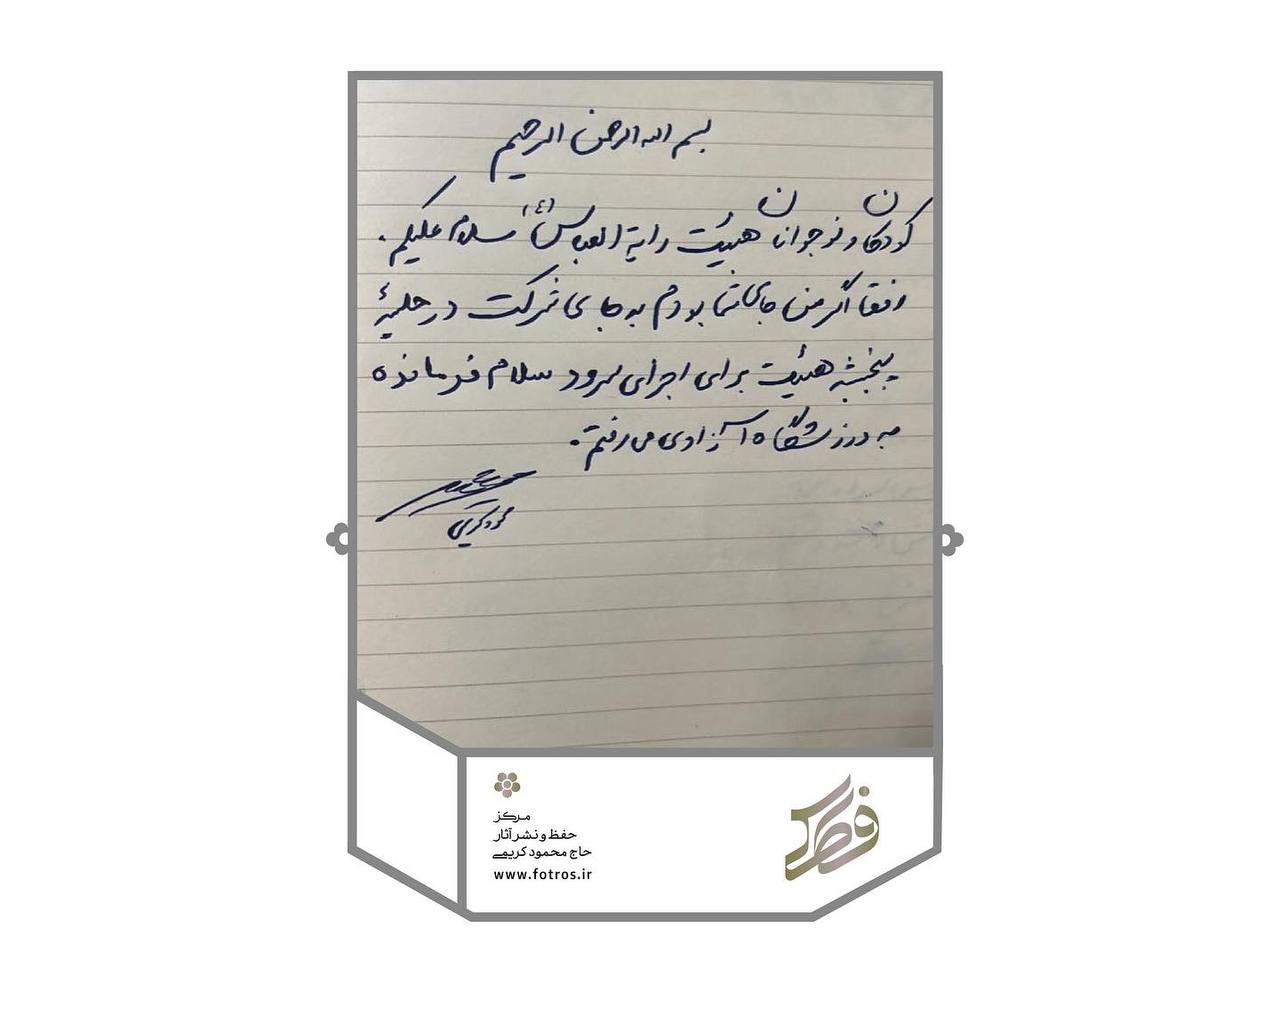 دعوت متفاوت حاج محمود کریمی برای اجتماع «سلام فرمانده» در ورزشگاه آزادی